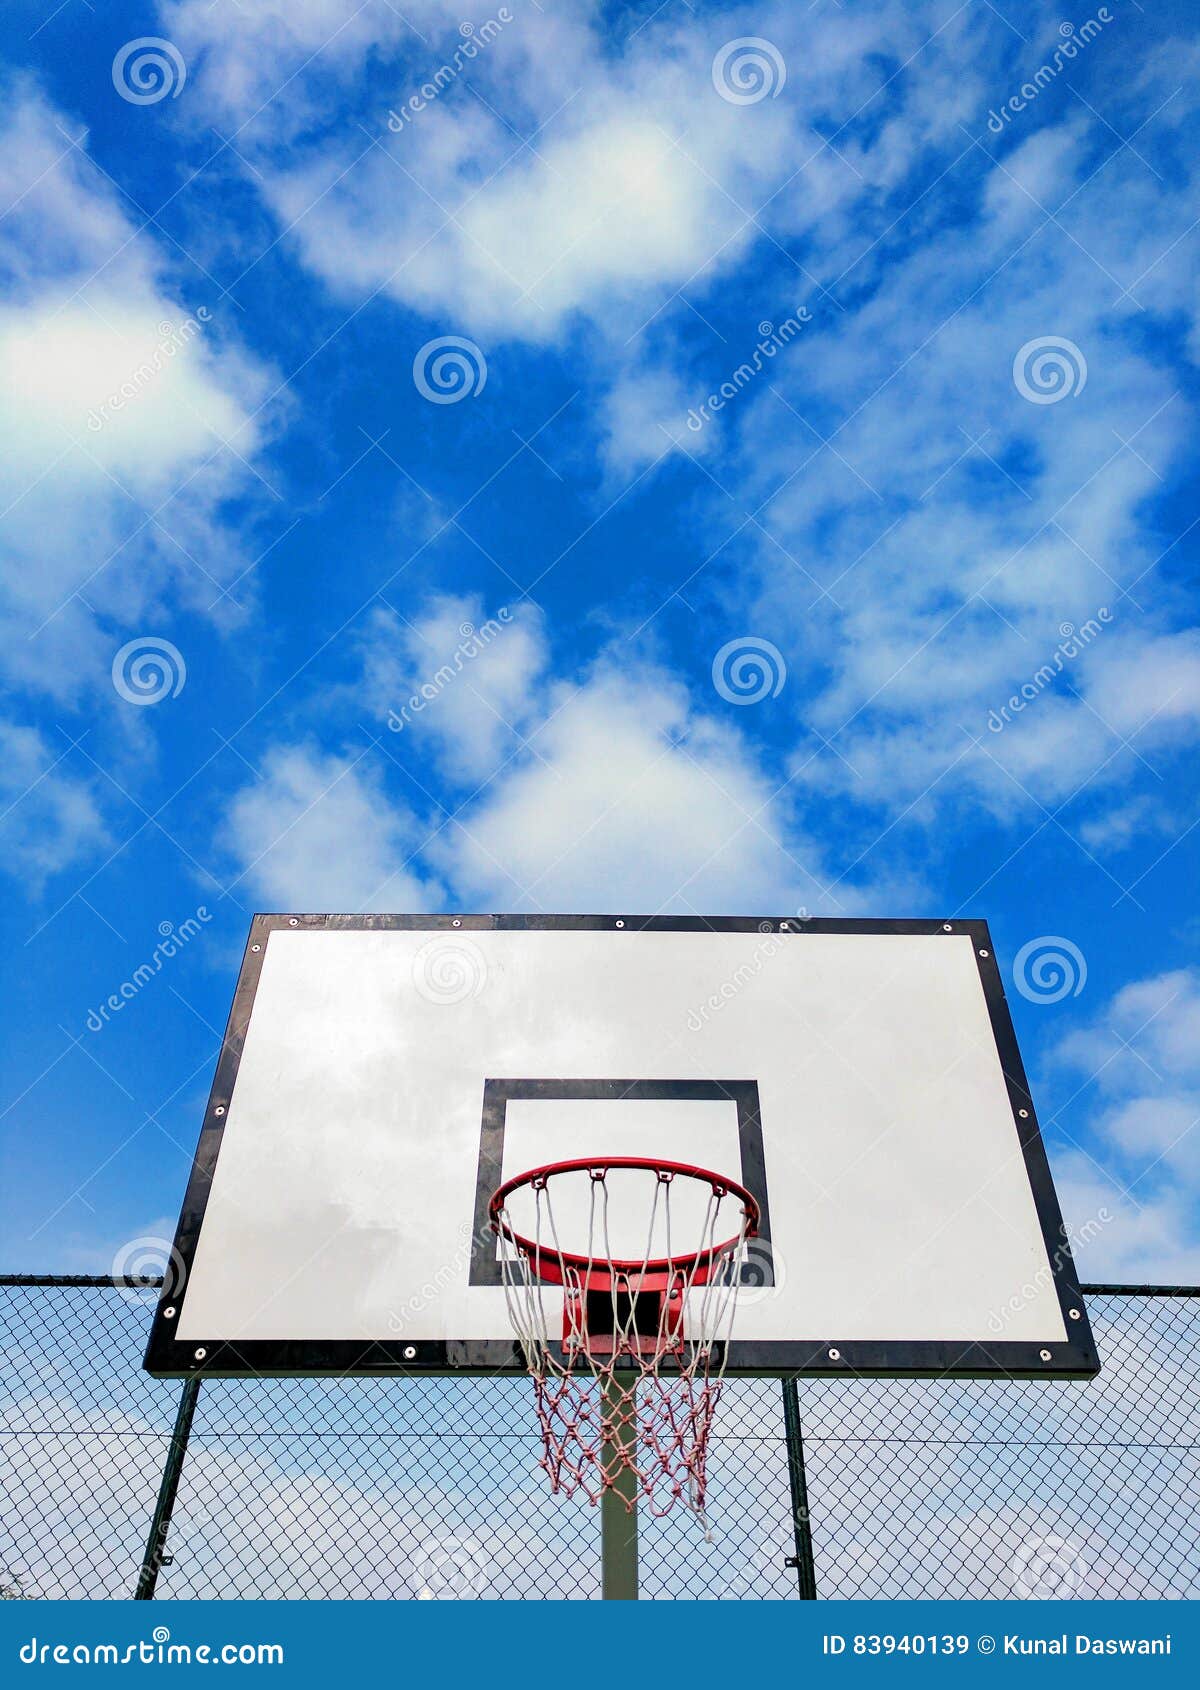 Aro de basquetebol